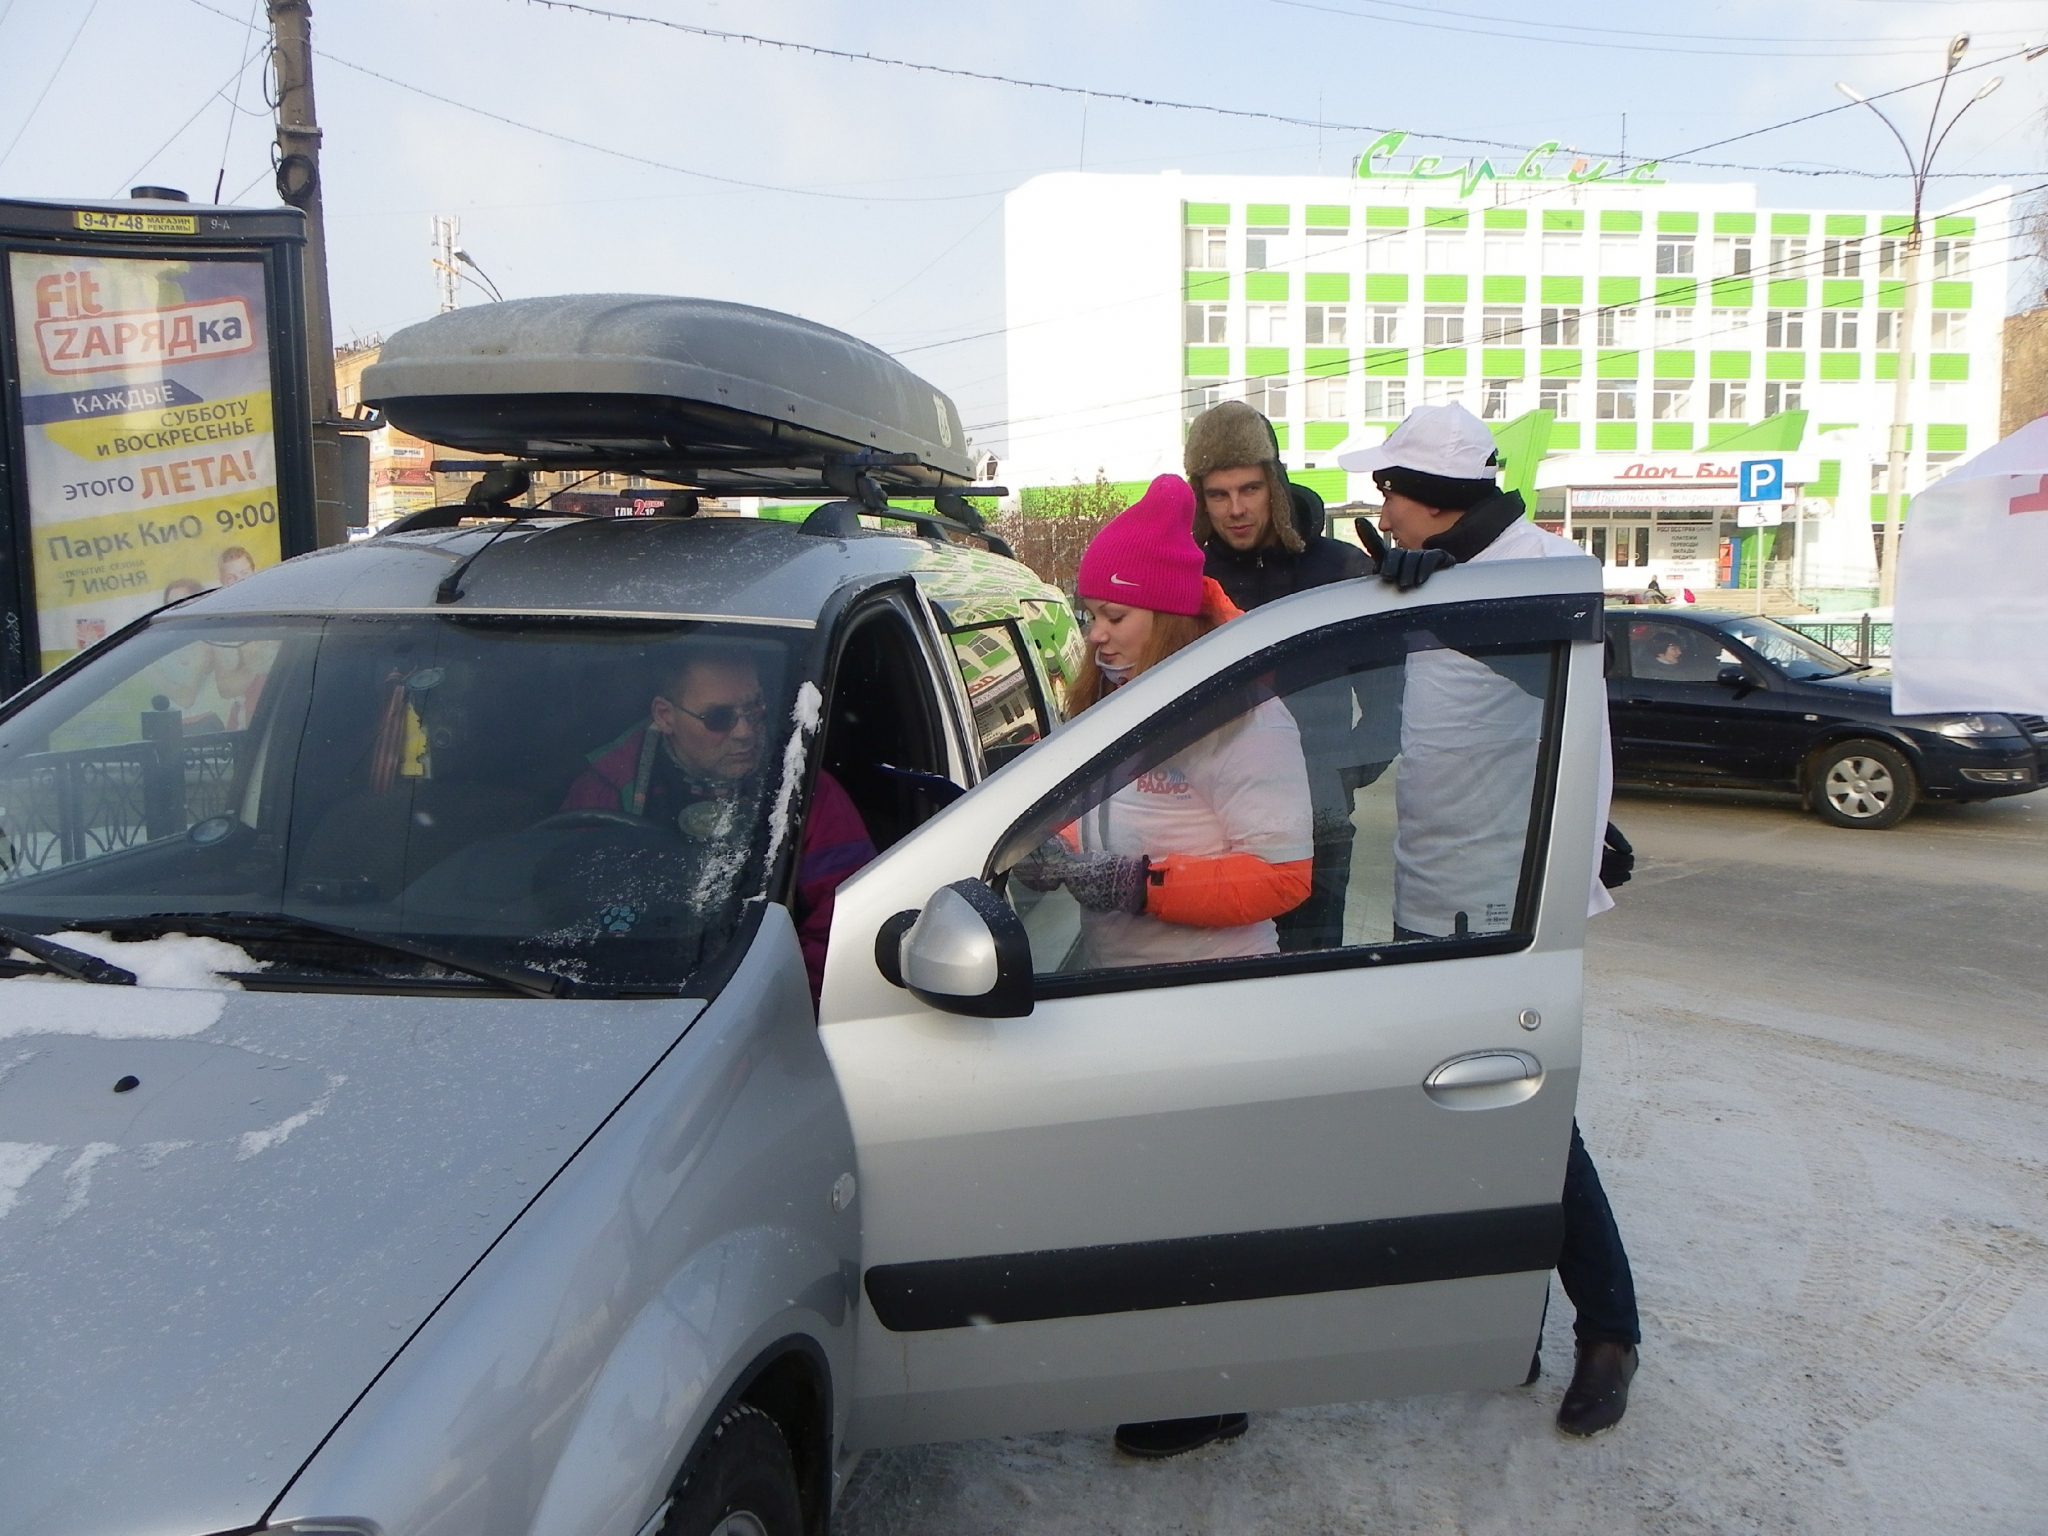 Как нижегородским автомобилистам не нарваться на штраф, вешая на машину знак "Ш"